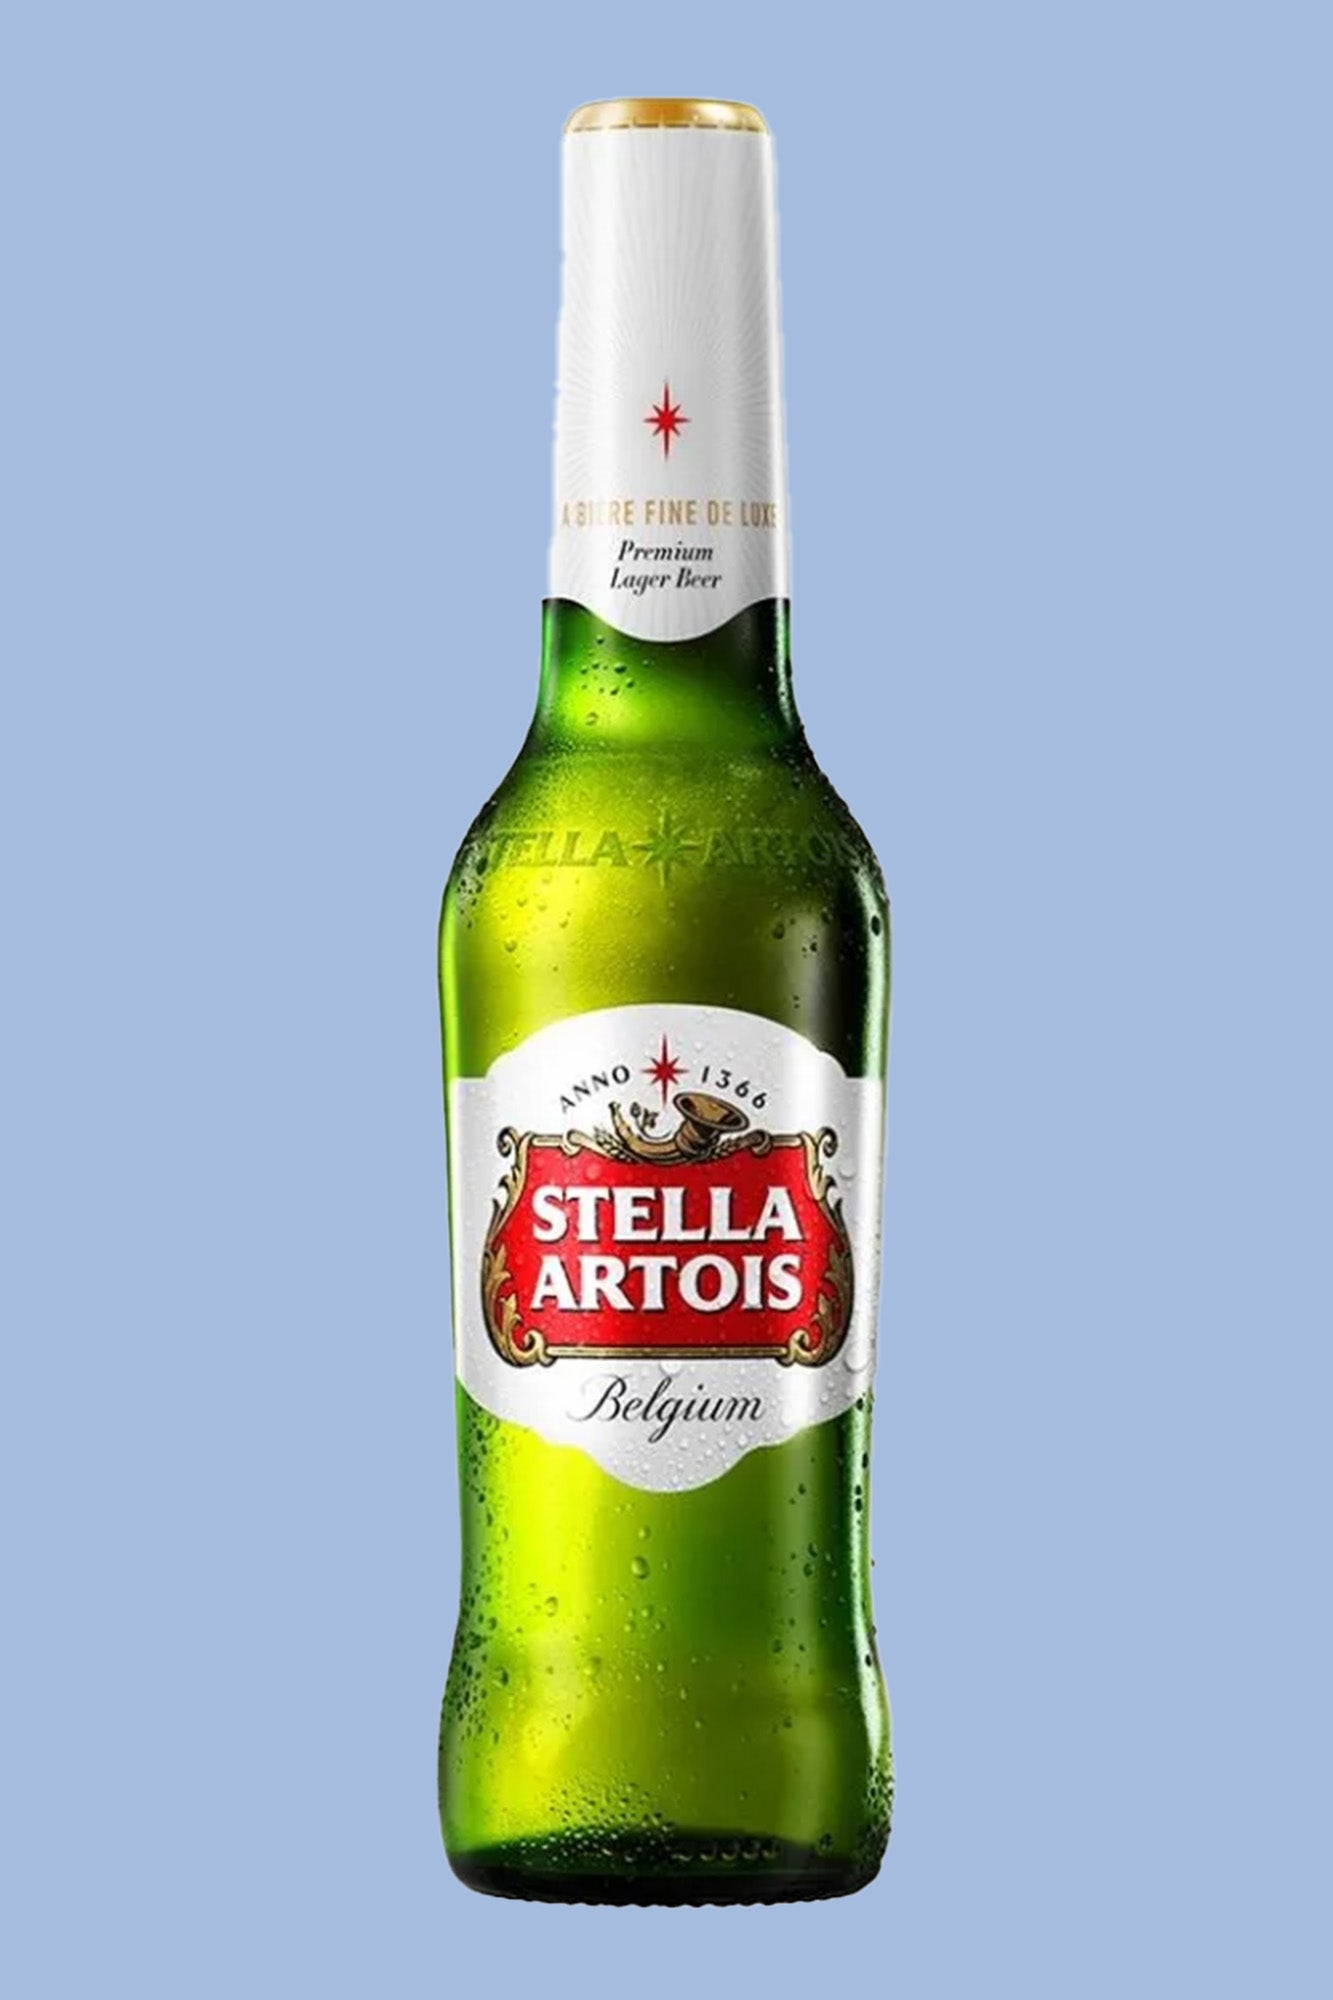 Stella Artois.